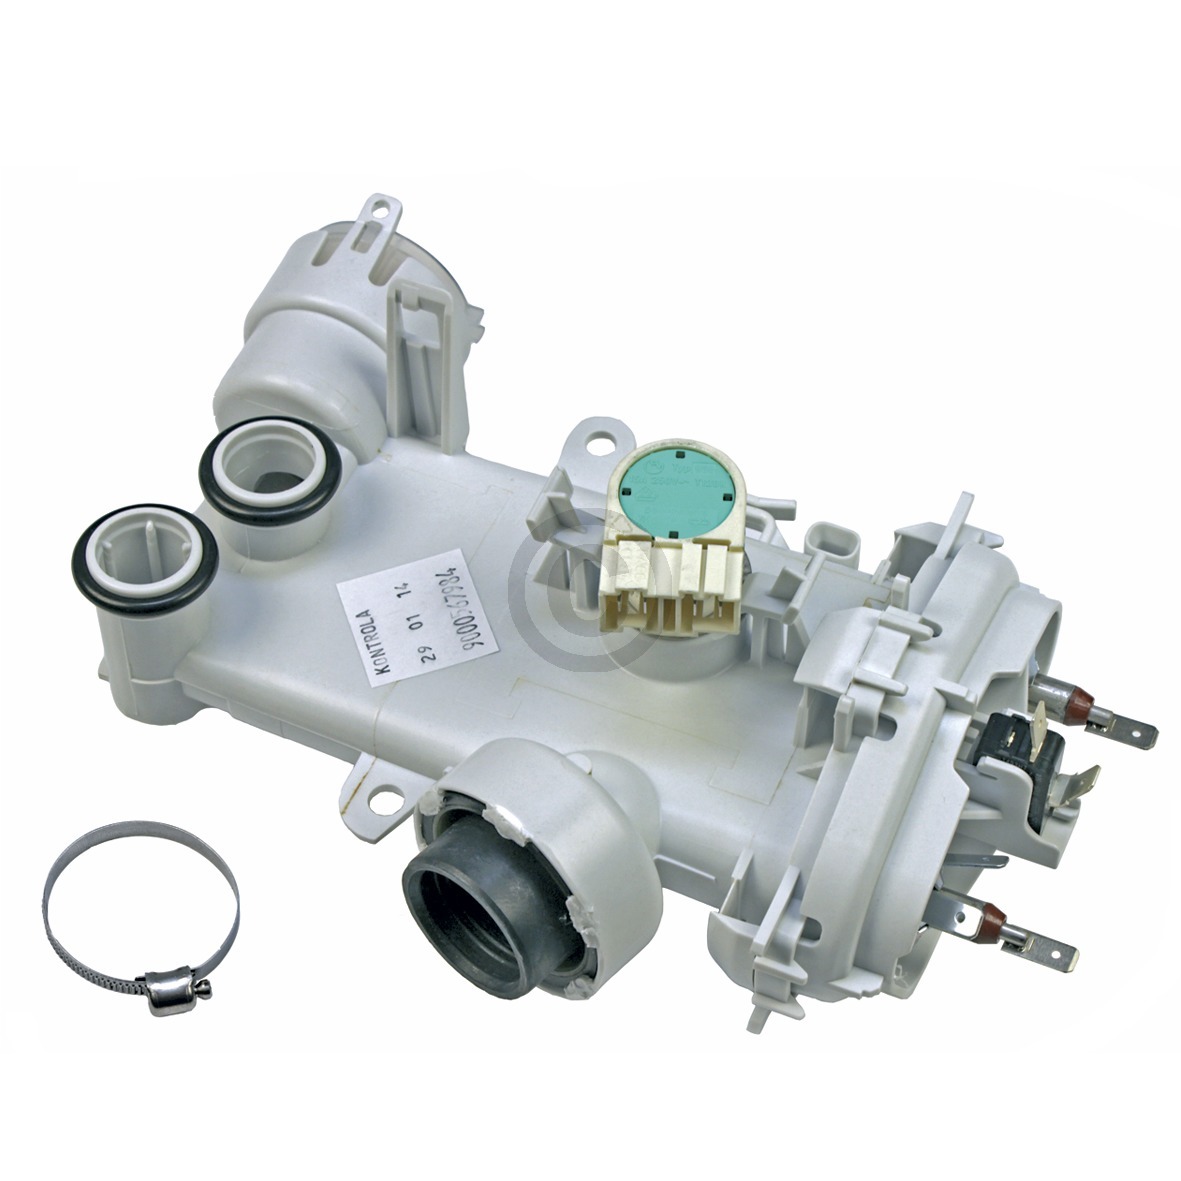 ORIGINAL Temperaturfühler NTC Sensor Fühler Spülmaschine Bosch Siemens 00165281 